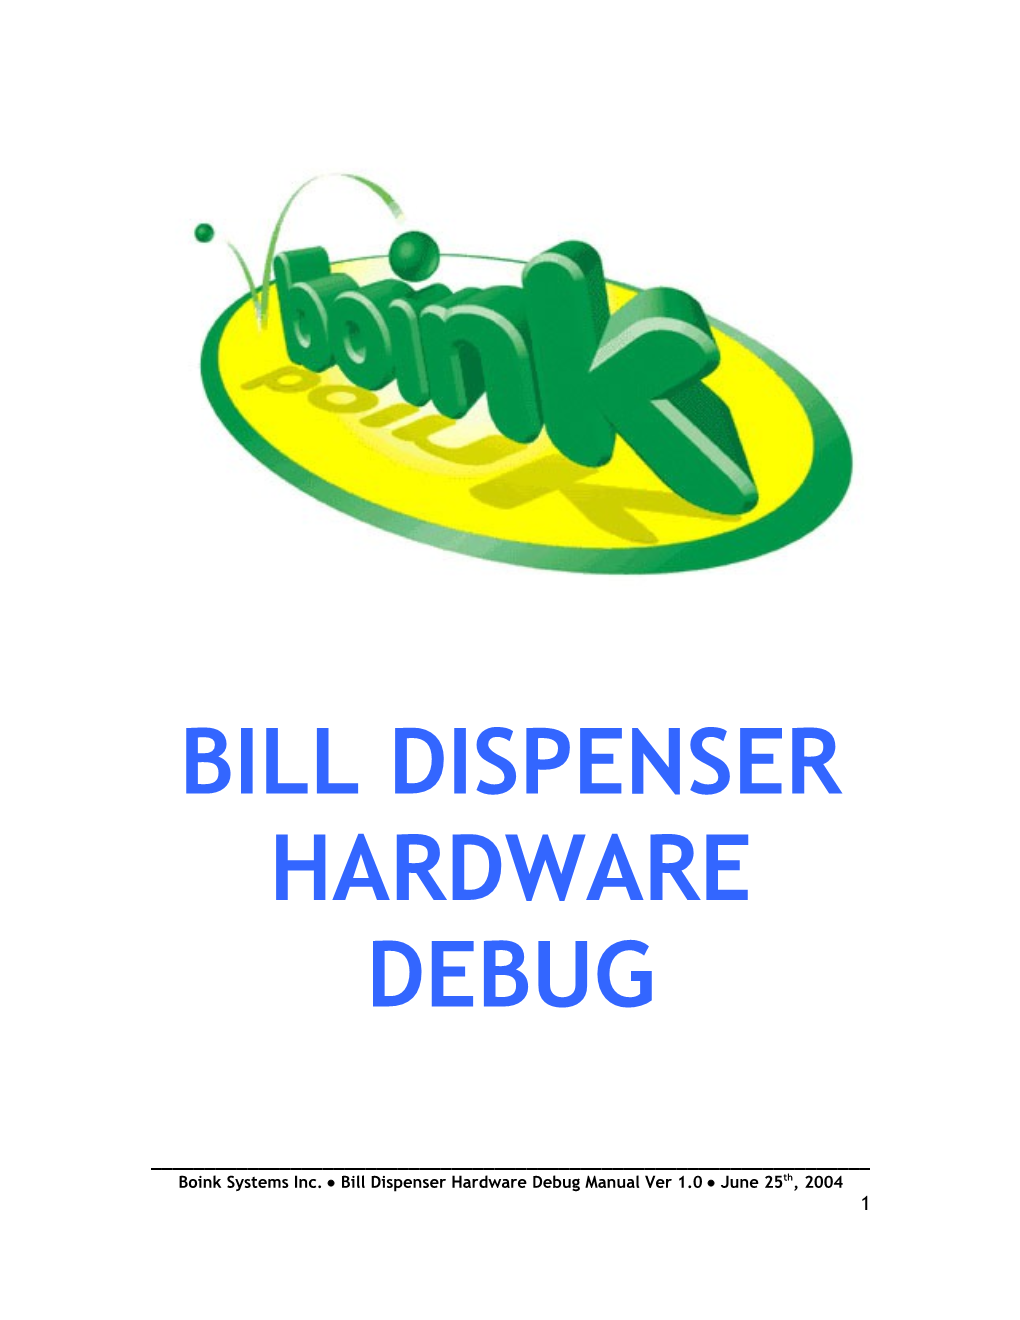 Bill Dispenser Debbuger